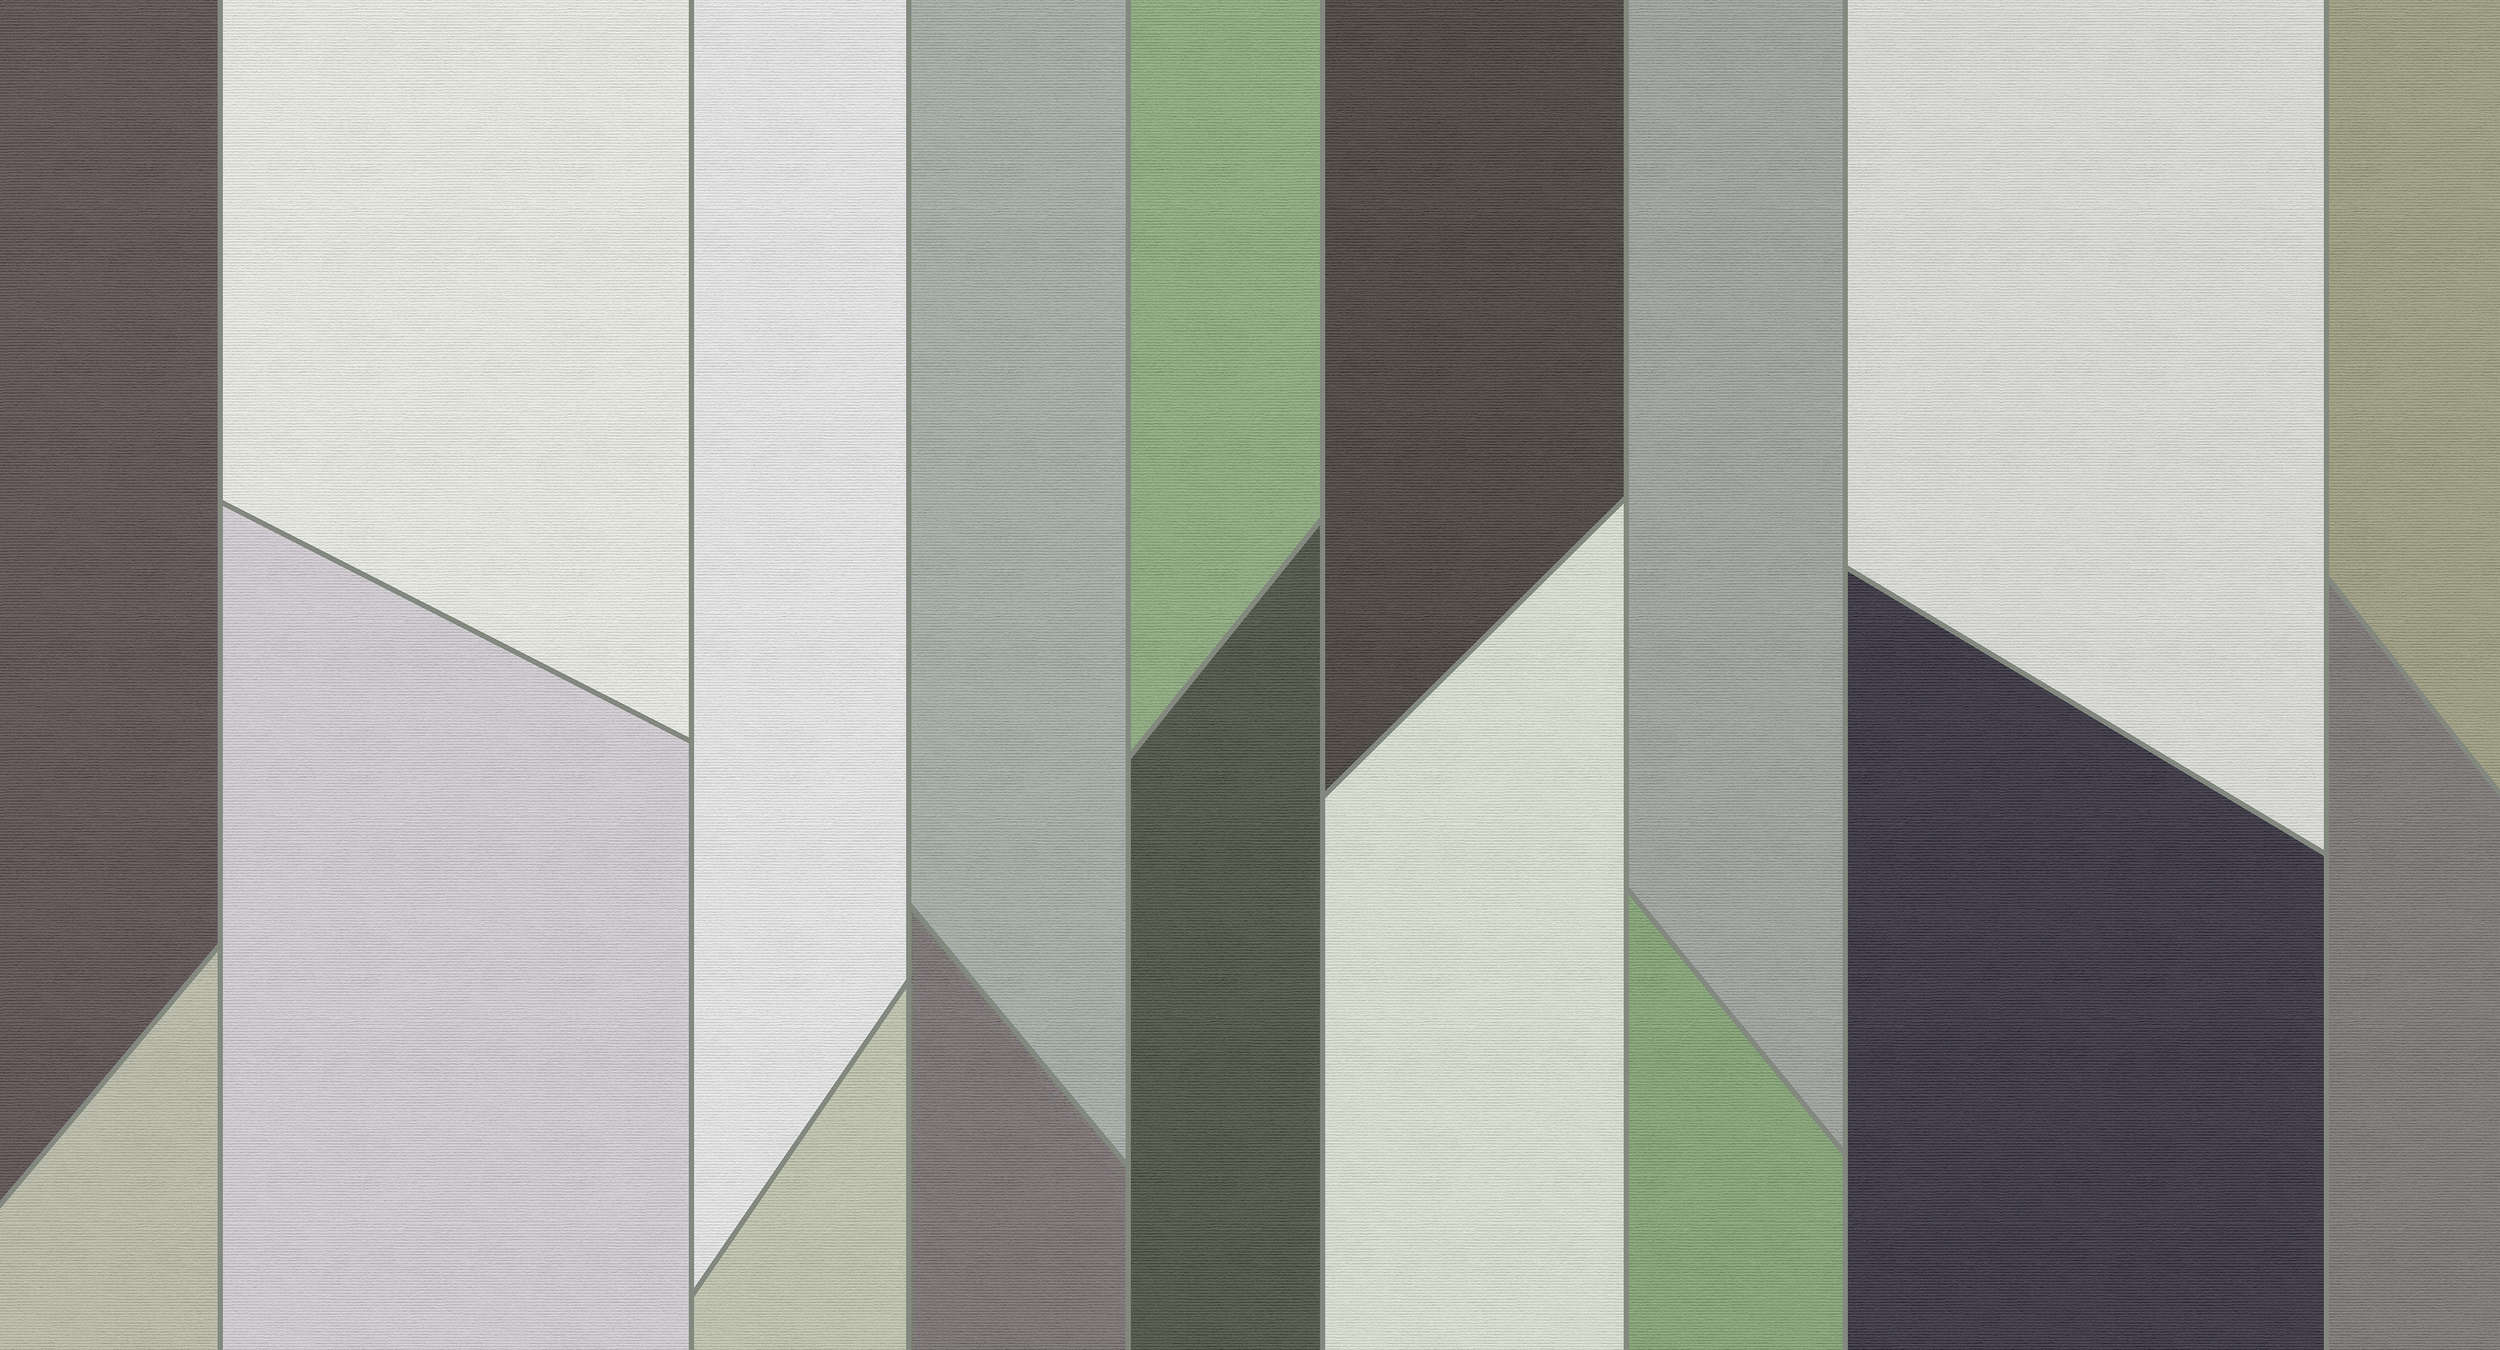             Geometry 3 - Papier peint rayé à structure côtelée au design rétro et coloré - vert, violet | intissé lisse nacré
        